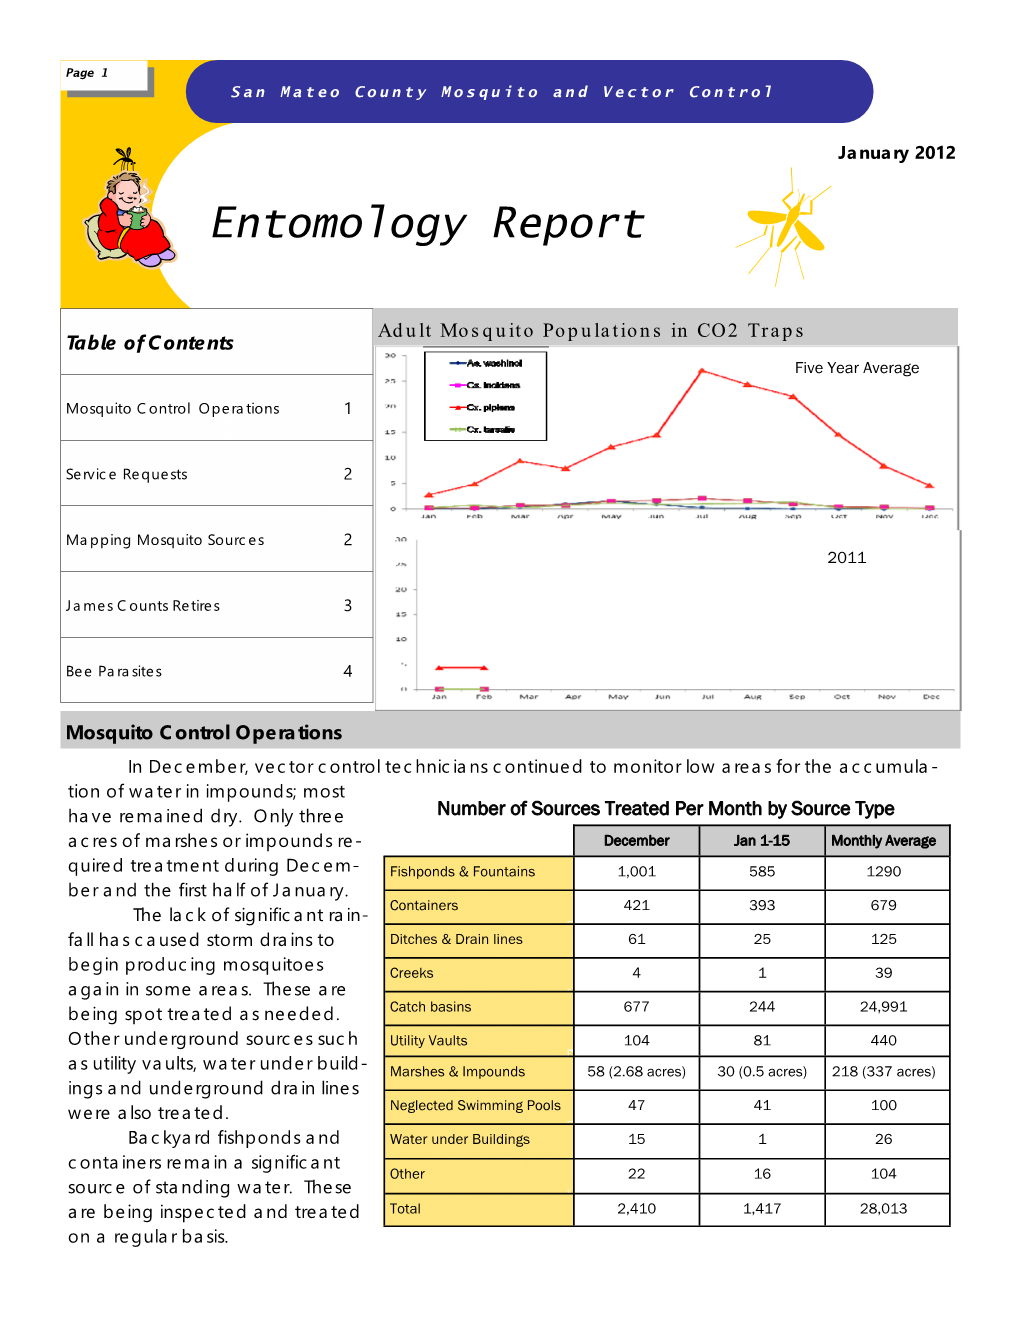 Entomology Report